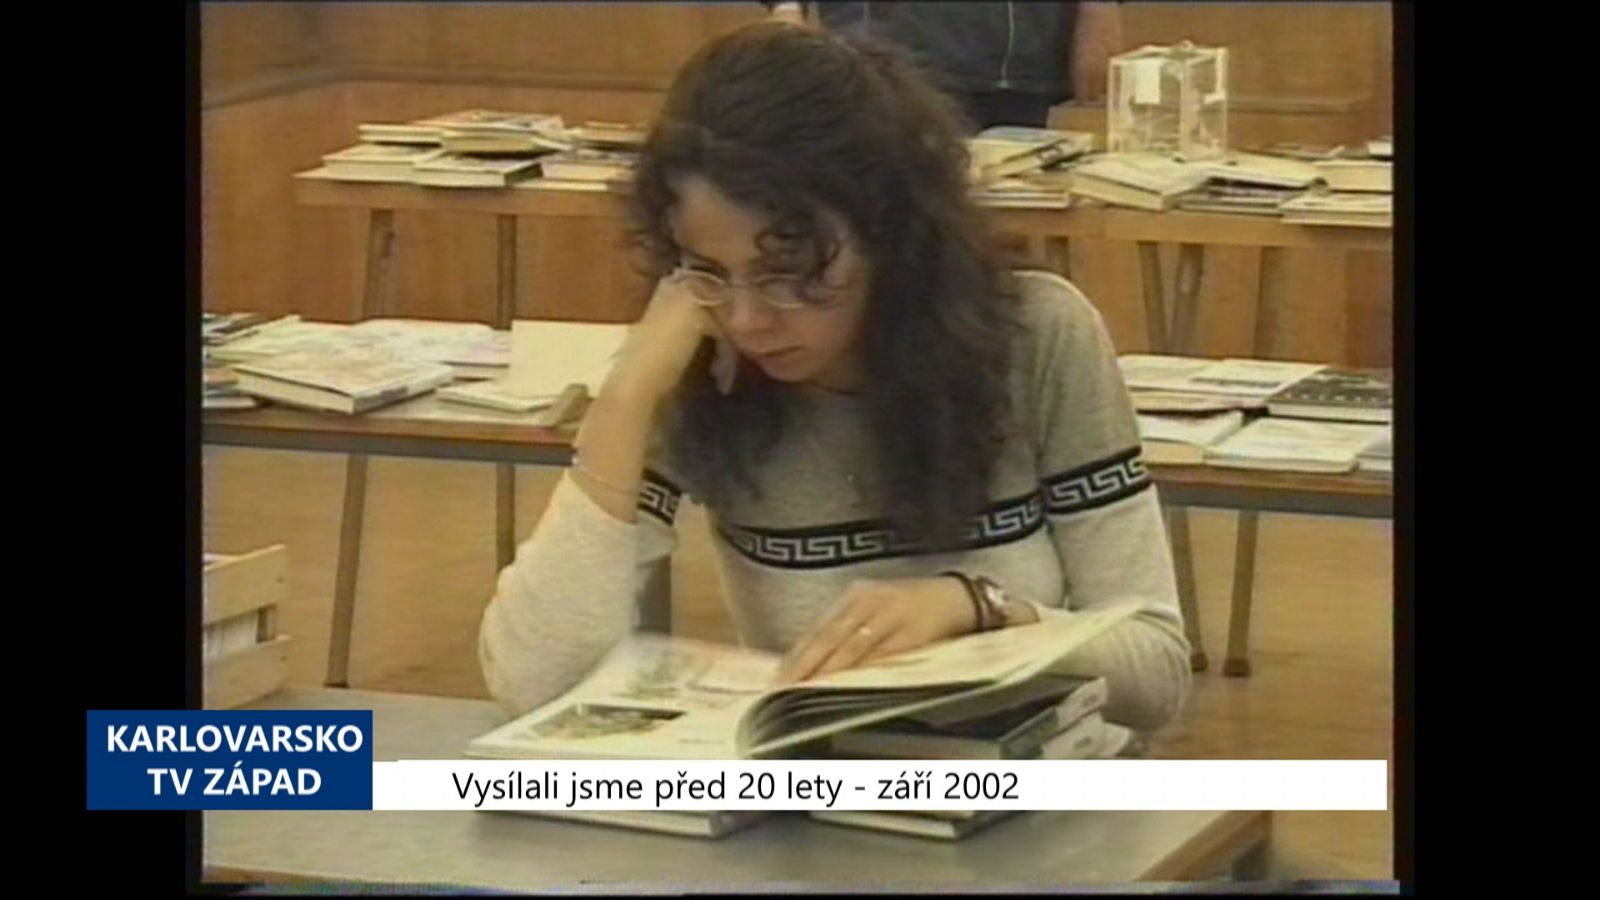 2002 – Cheb: Město převezme okresní knihovnu (TV Západ)